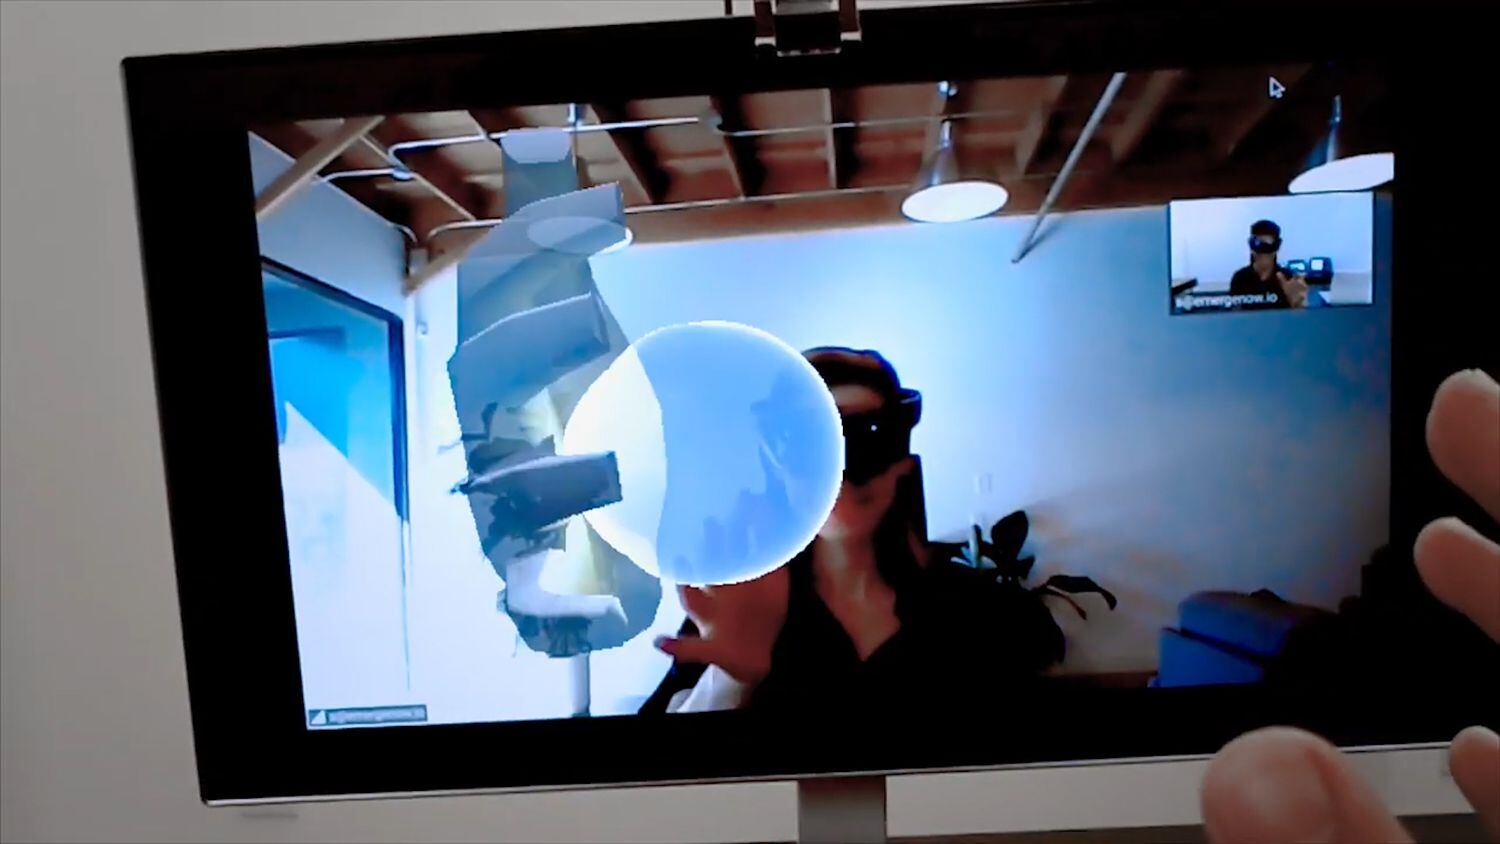 Des utilisateurs testent l'appareil que la société Emerge développe, dans lequel deux interlocuteurs jouent et partagent la touche immersive d'un objet.